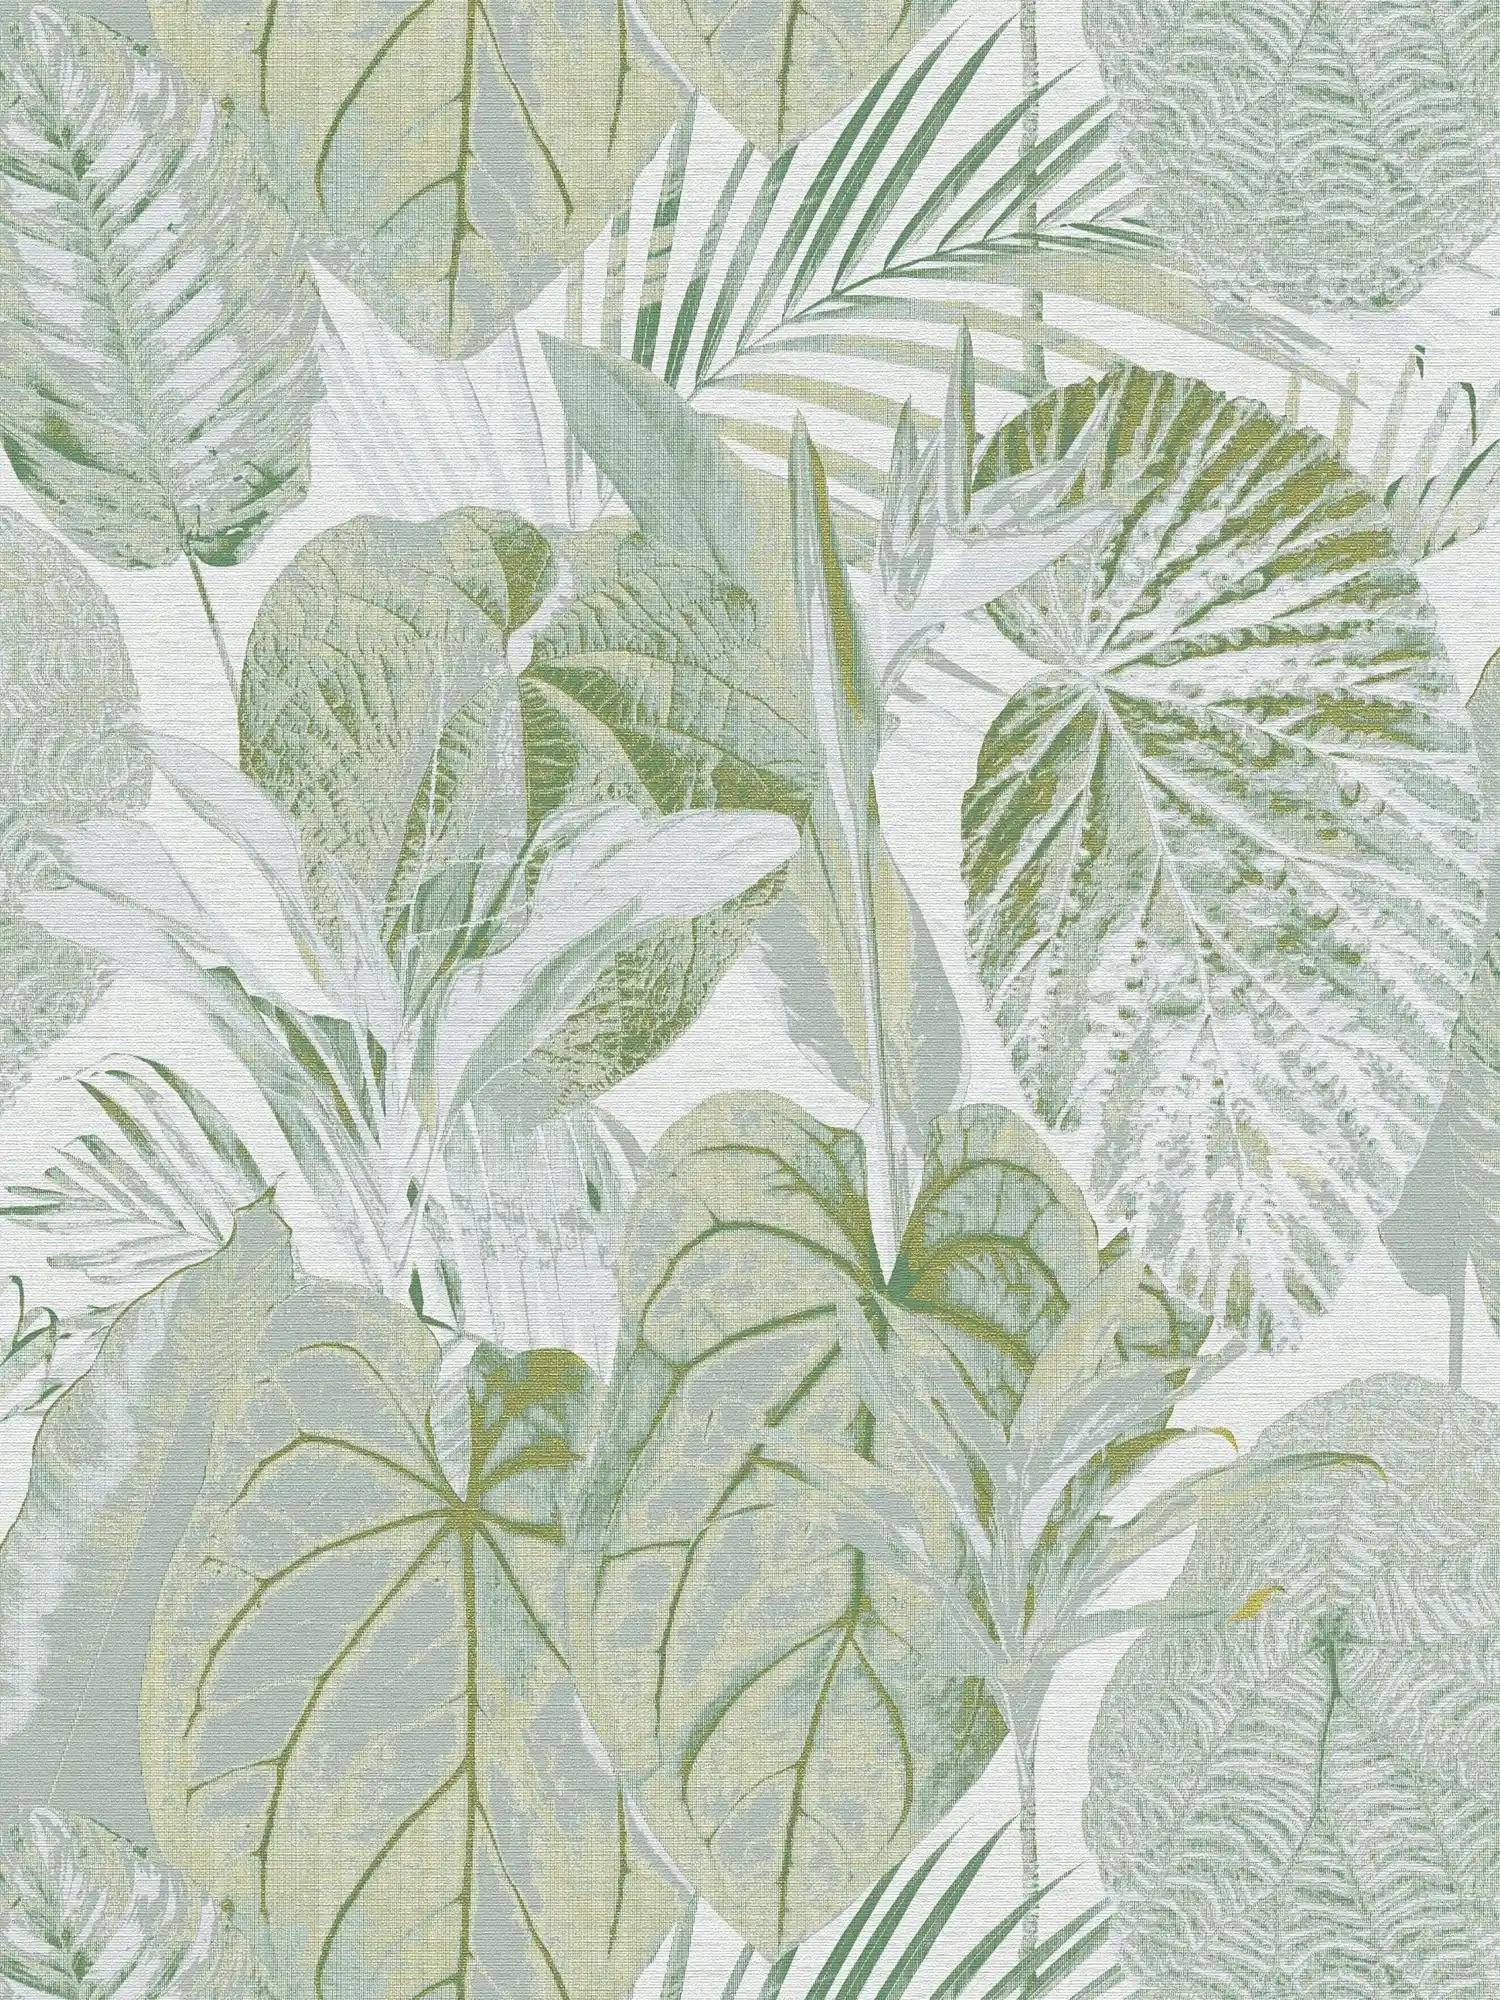 Tapete mit Blättern und Dschungelmuster leicht glänzend – Grün, Weiß, Grau
